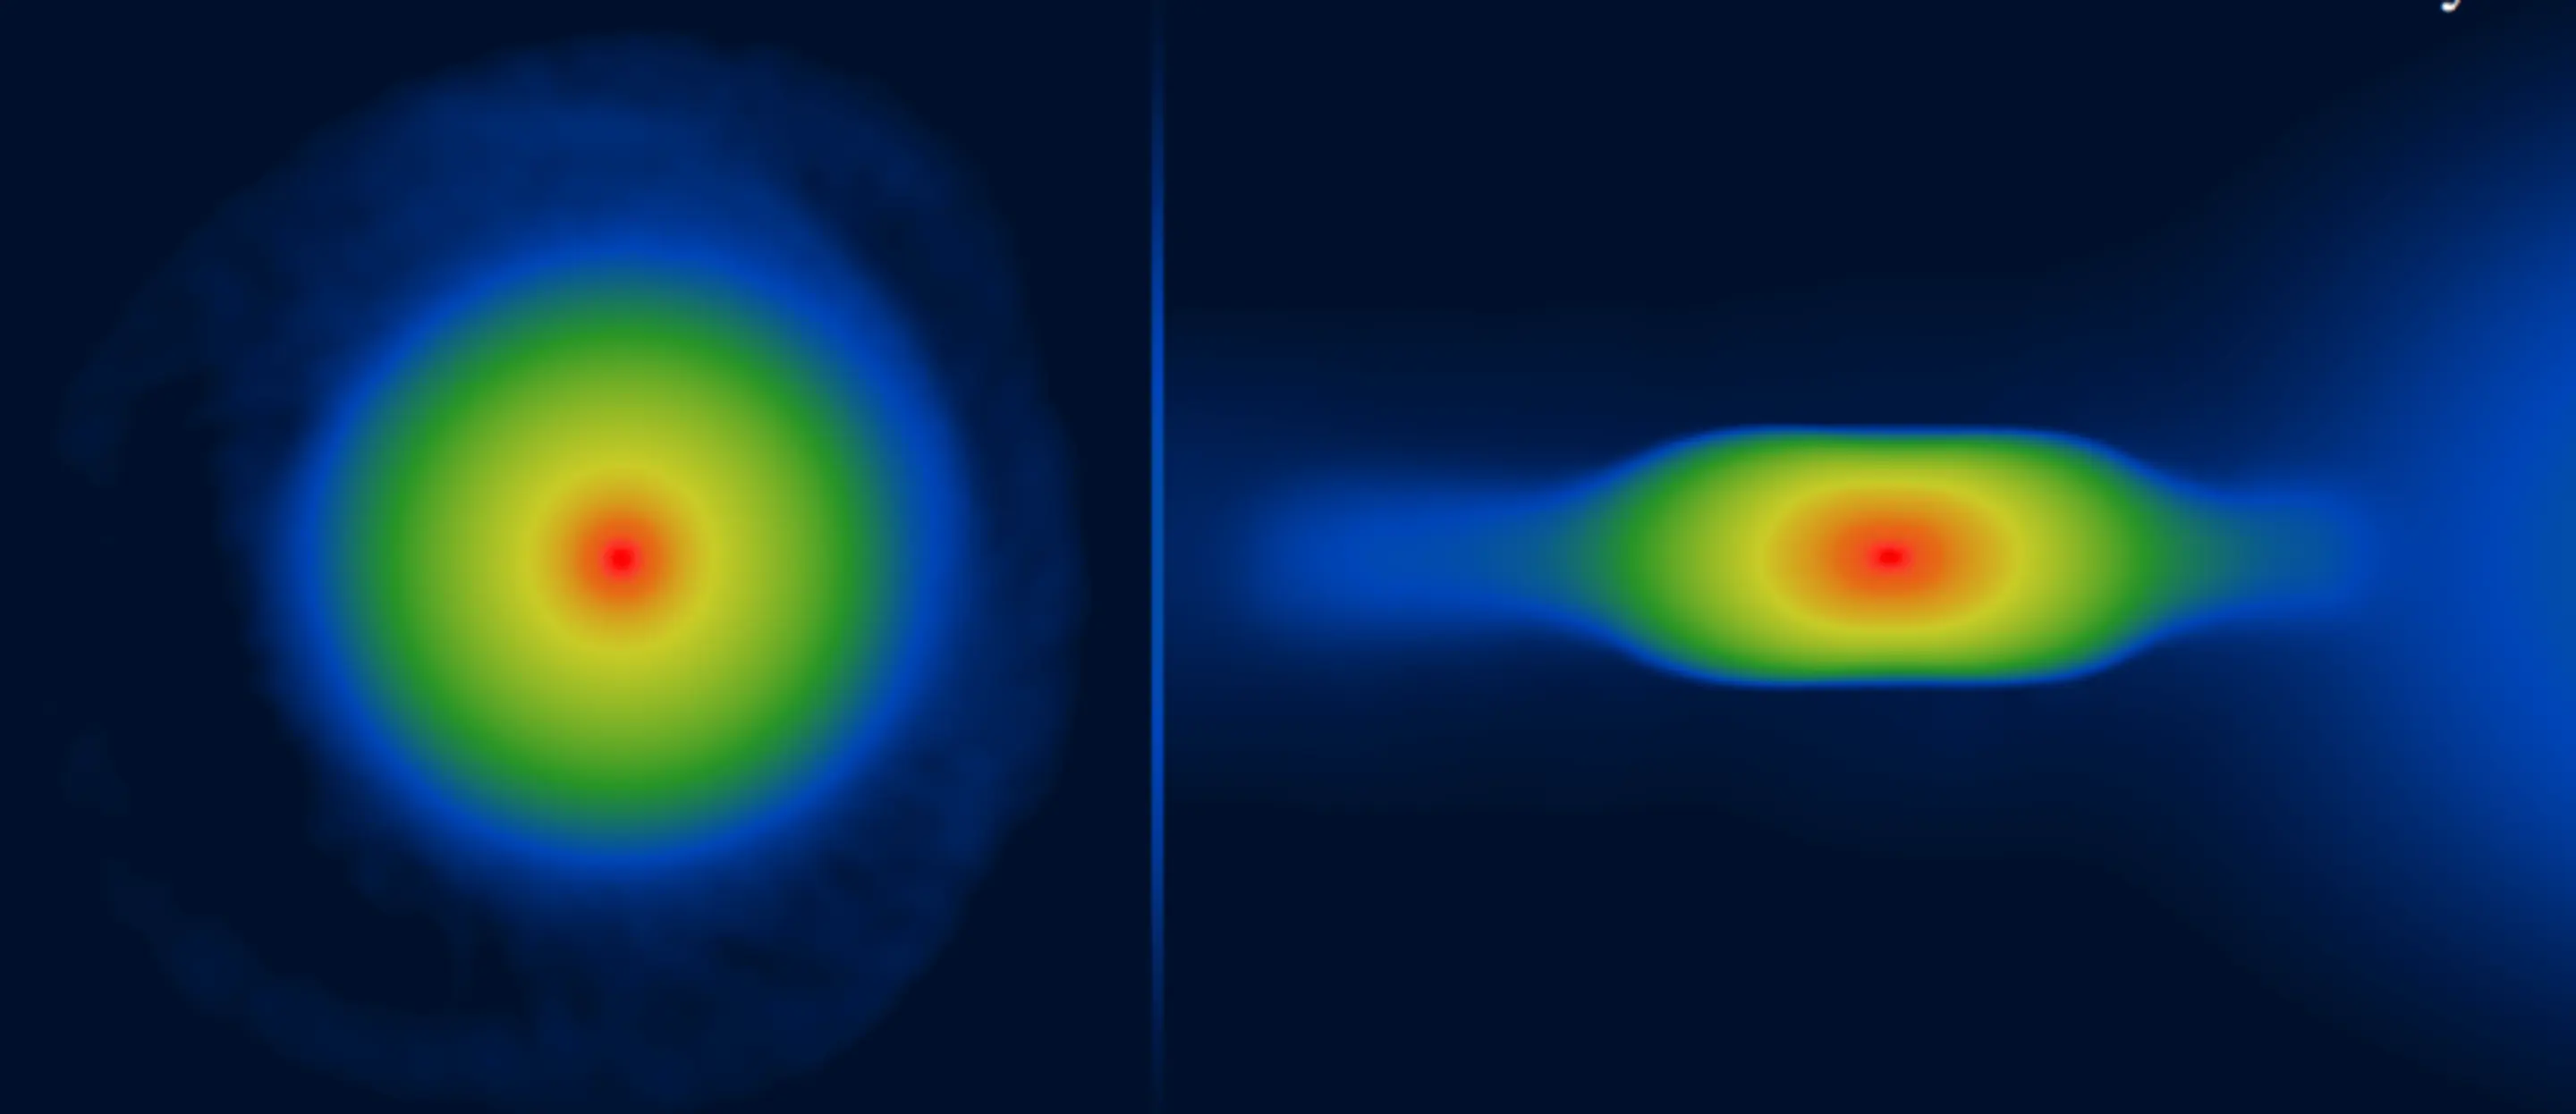 Imagens simuladas de um protoplaneta "plano" mostrado de cima (esquerda) e de lado (direita). (Fonte: UCLan)